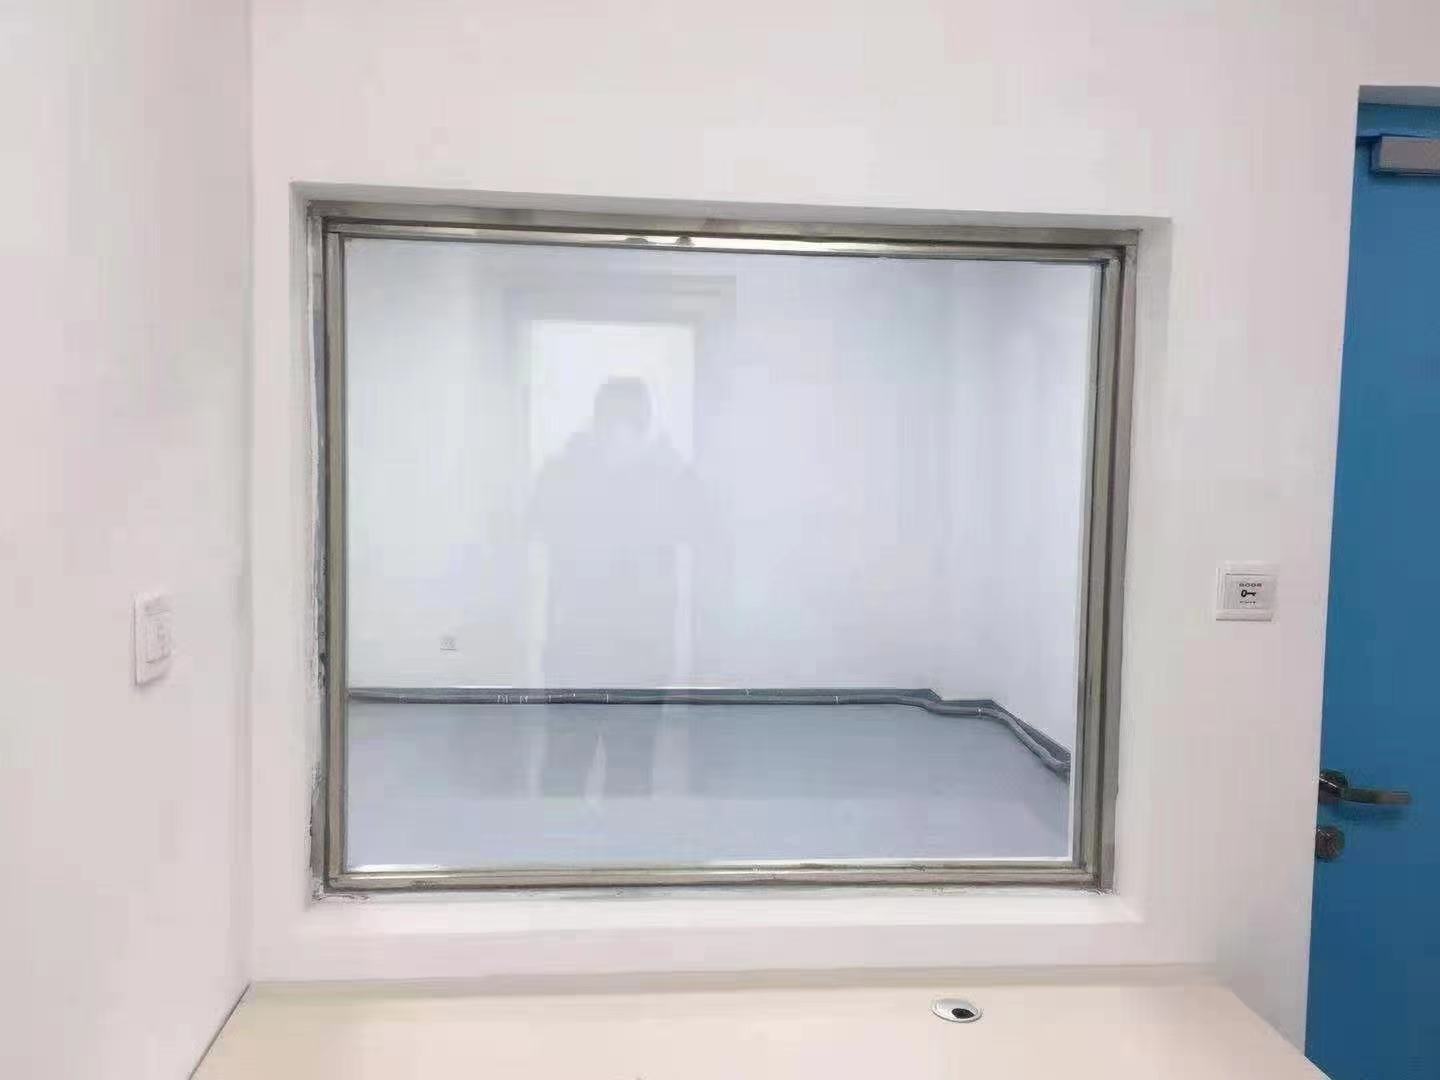 防辐射铅玻璃  铅玻璃厂家 铅玻璃厚度 铅玻璃价格 铅玻璃质量  铅玻璃观察窗图片